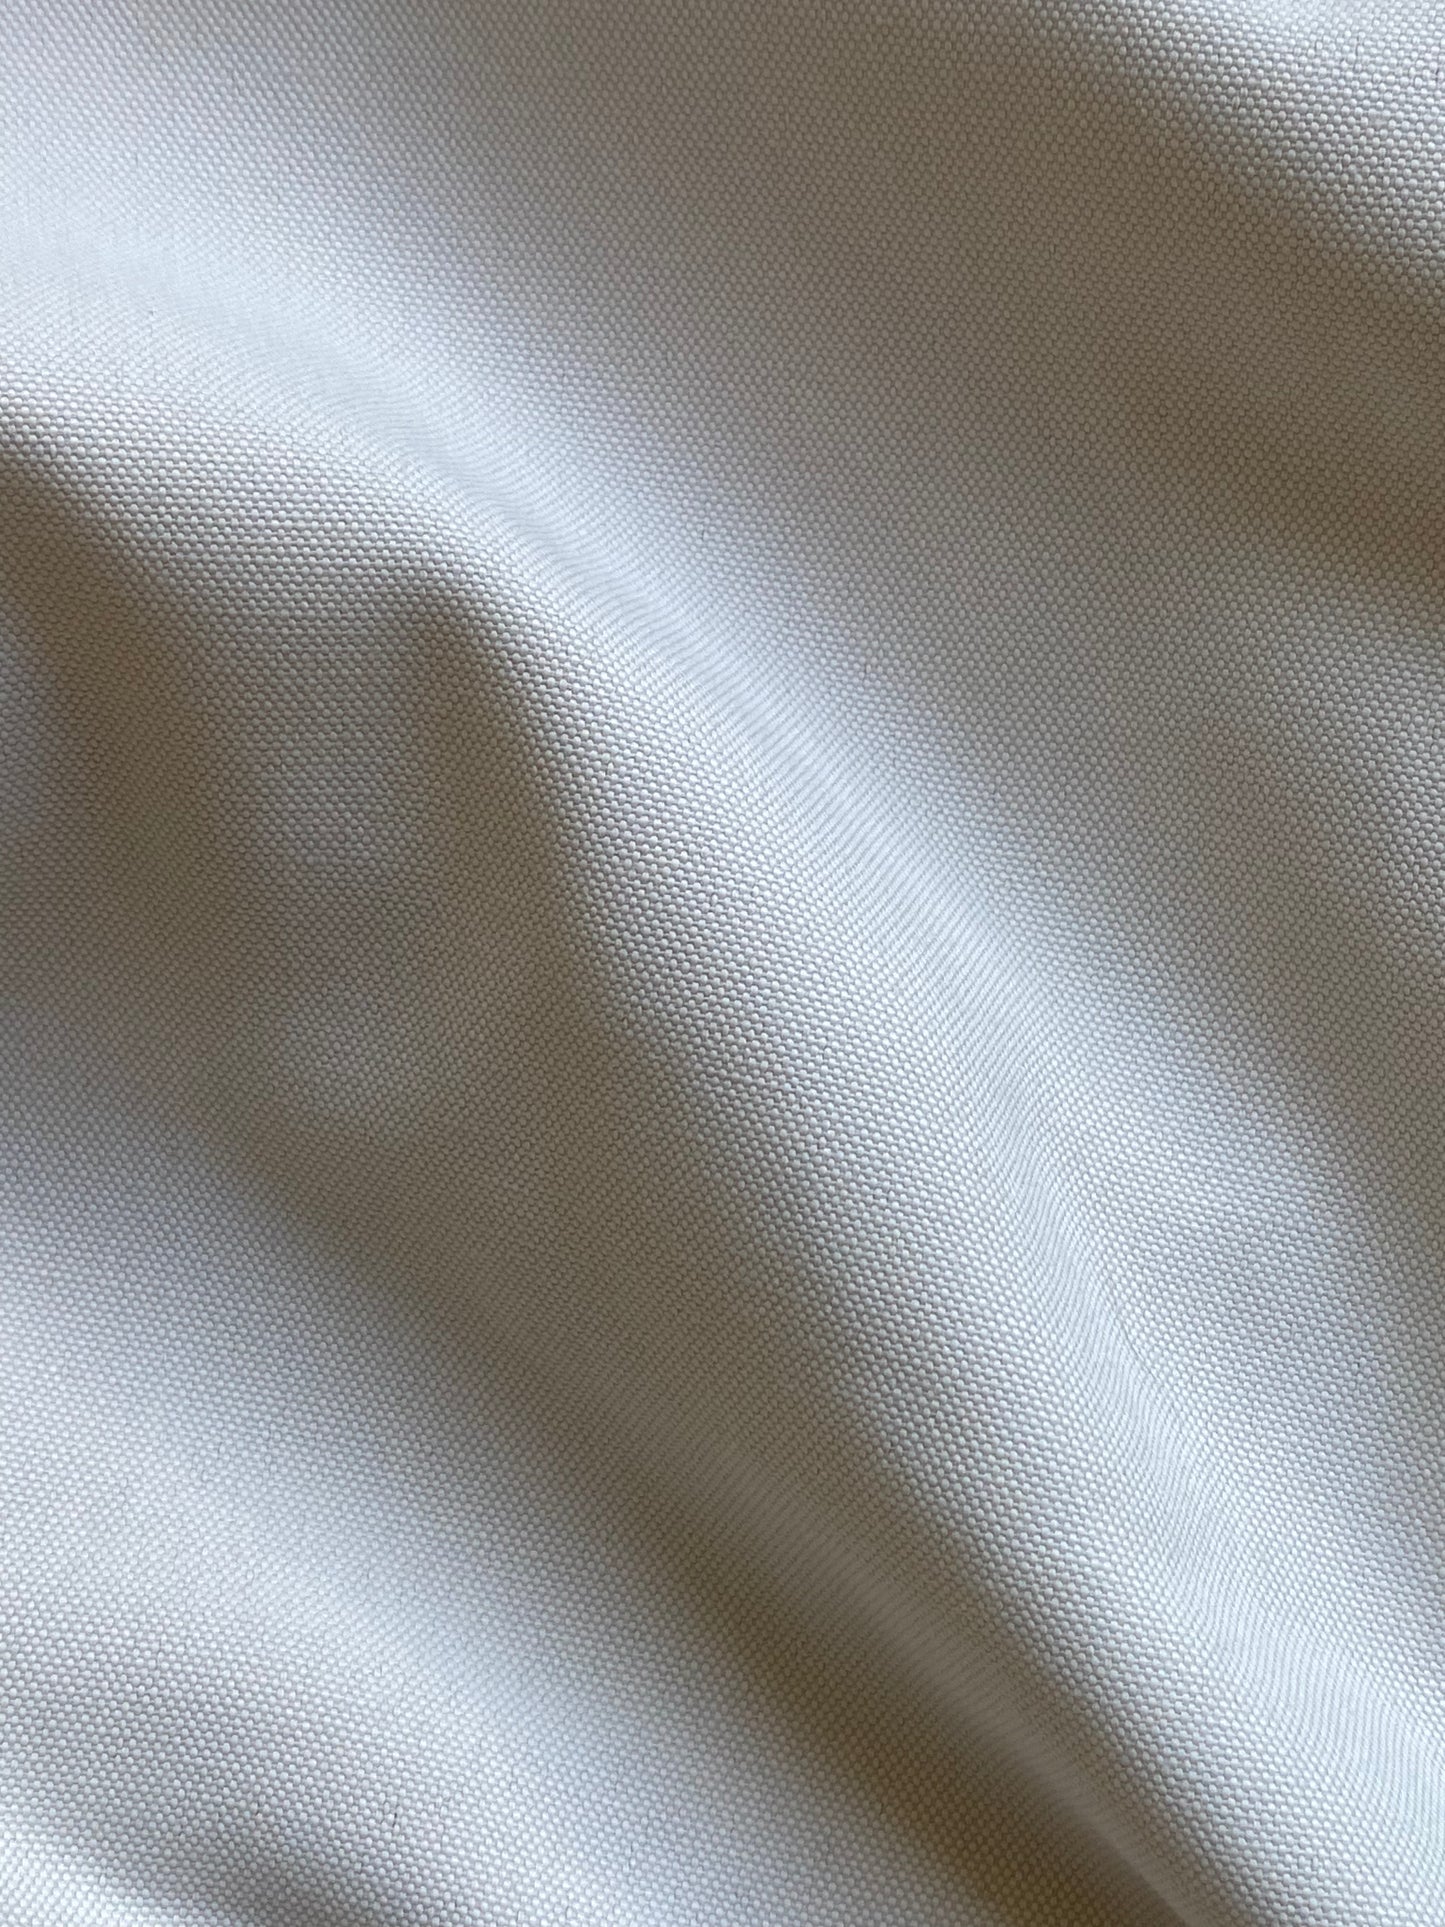 Half Sleeve PJ Collar Shirt